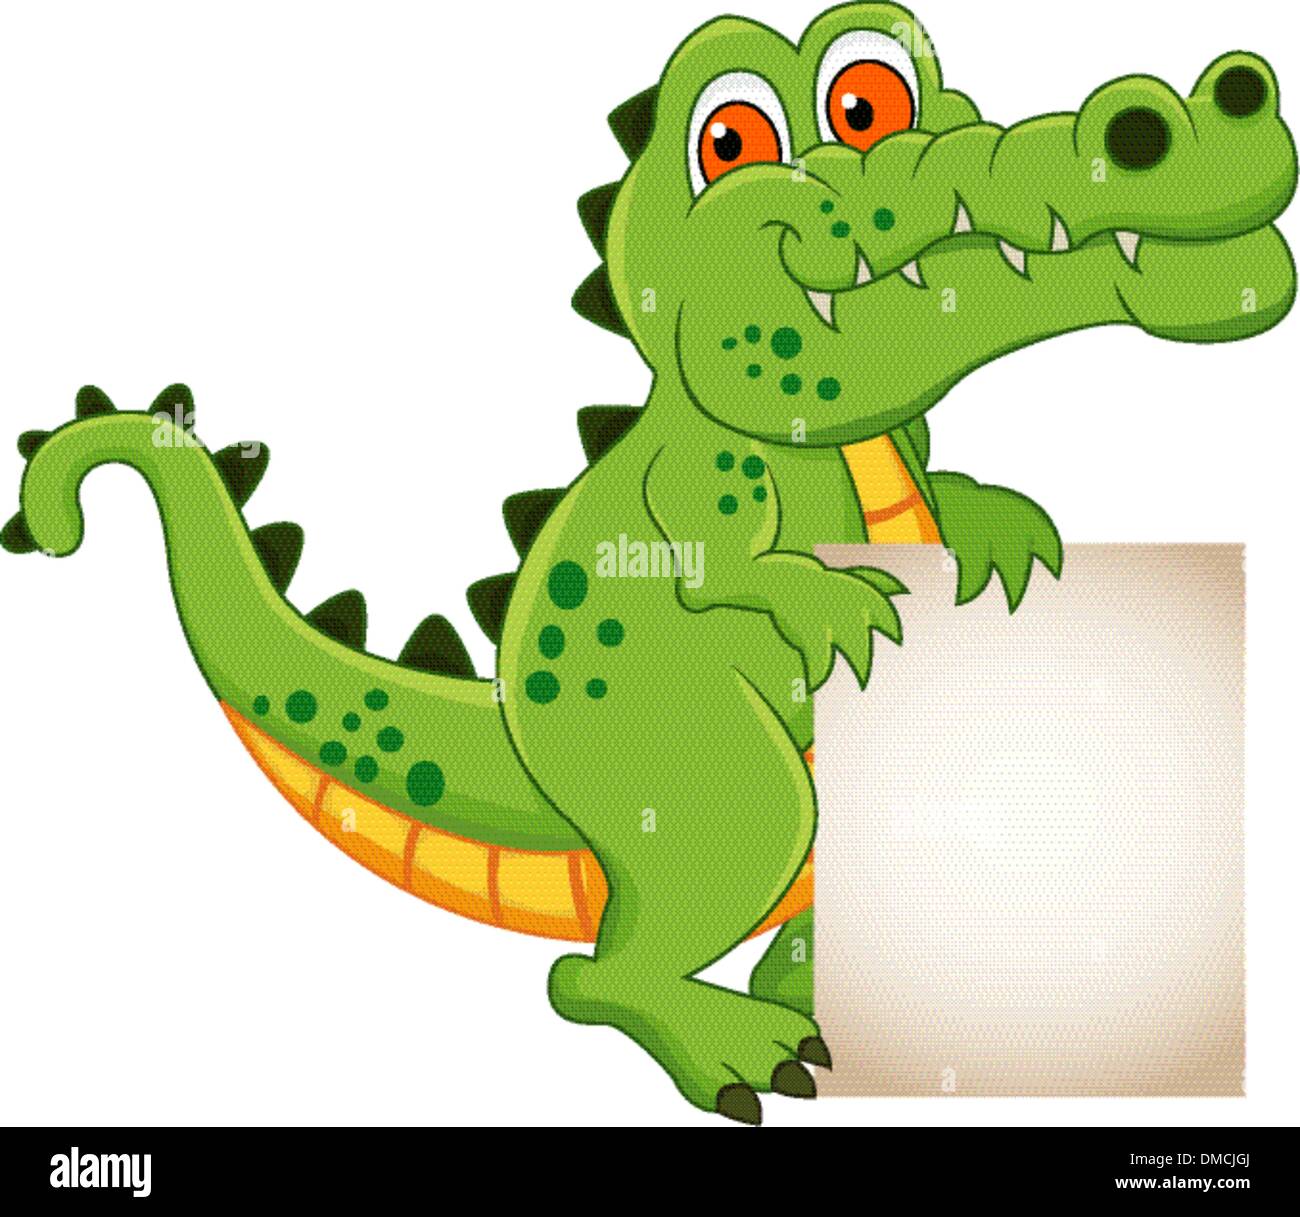 crocodile cartoon with blank sign Stock Vector